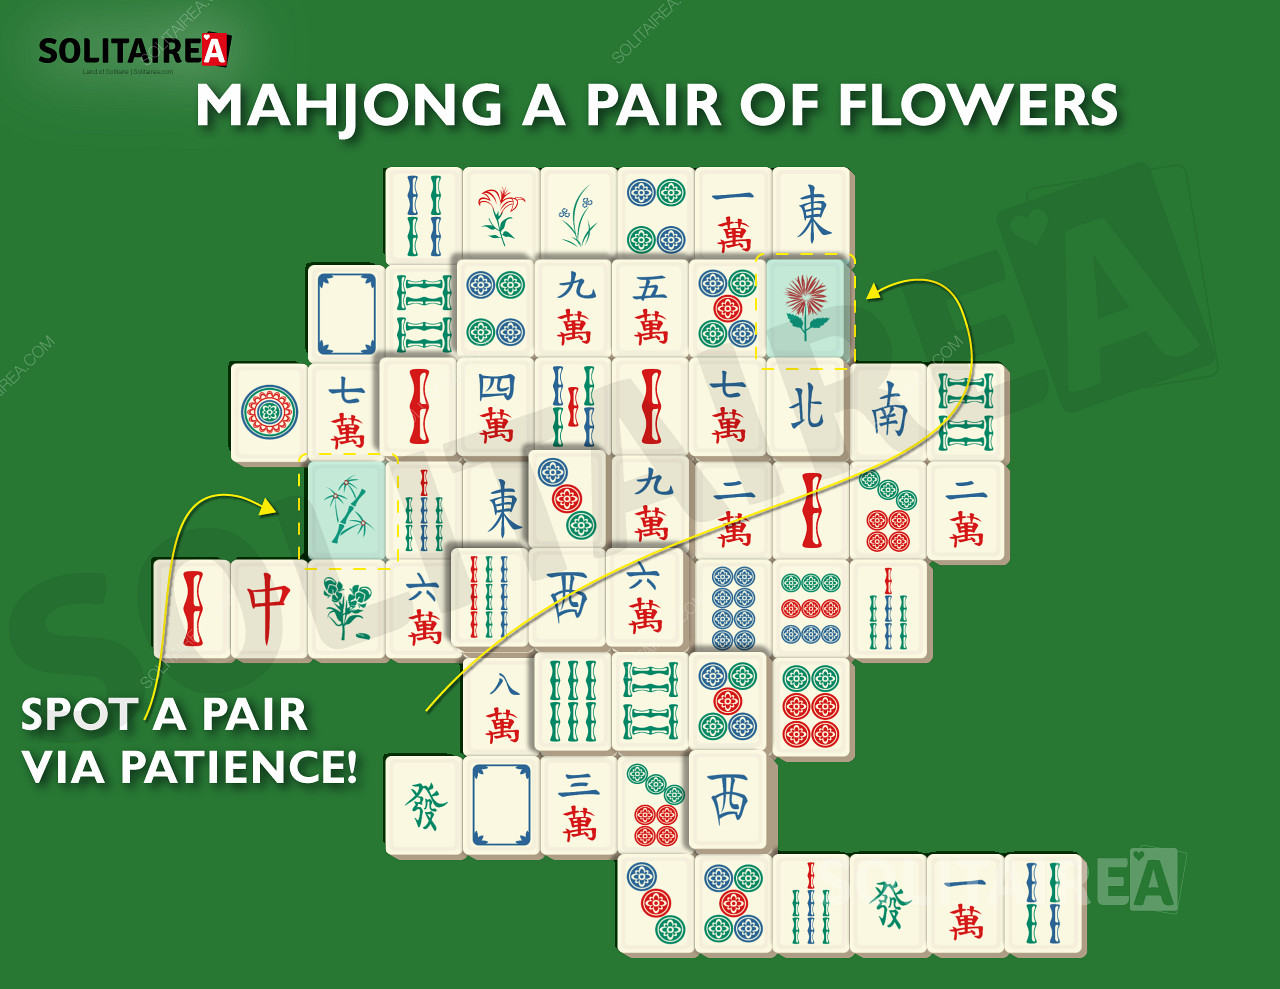 Immagine di Mahjong Solitaire che mostra una tipica selezione di tessere.